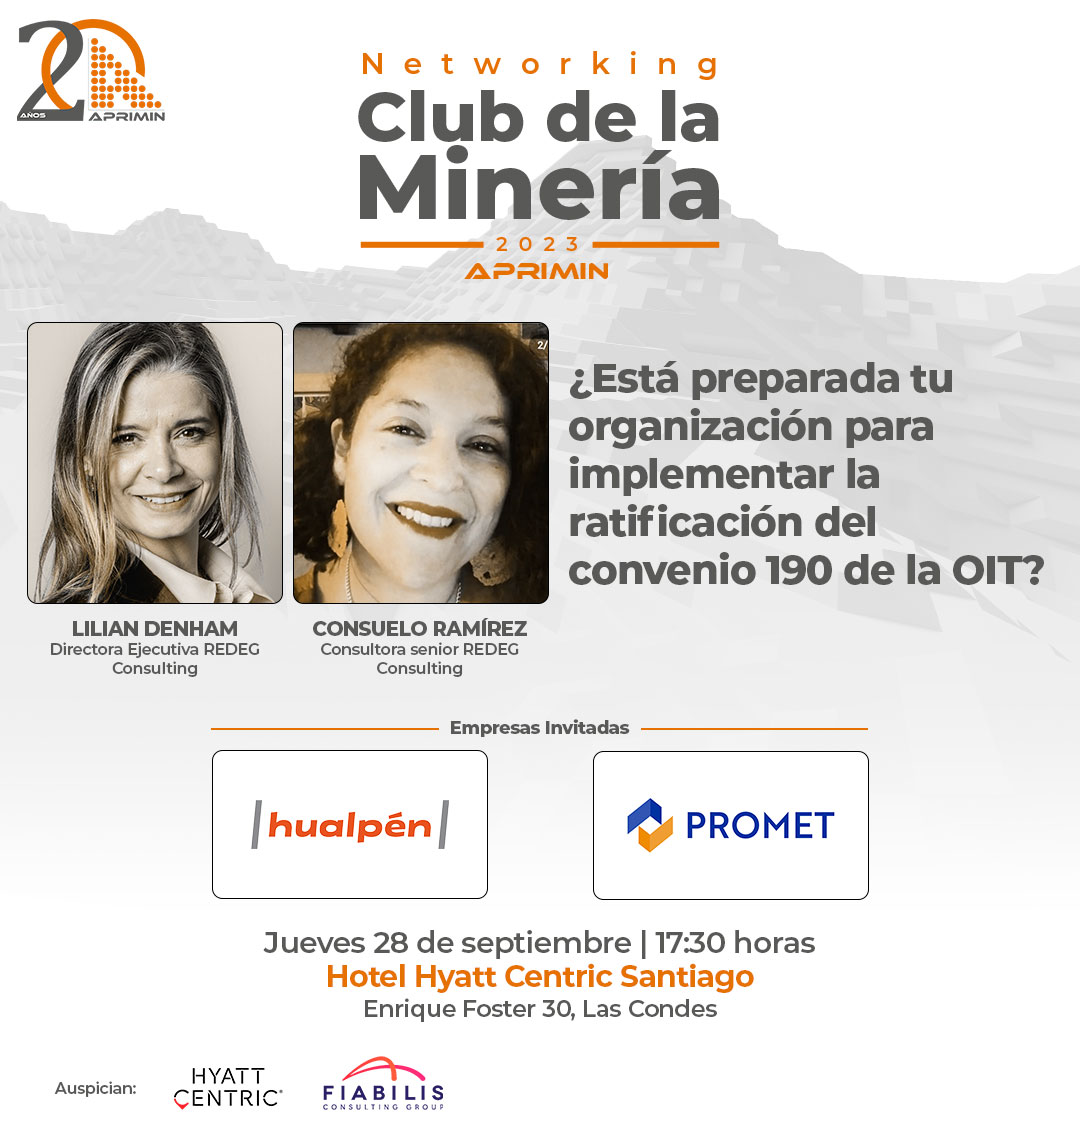 Networking "Club de la Minería" APRIMIN - Septiembre